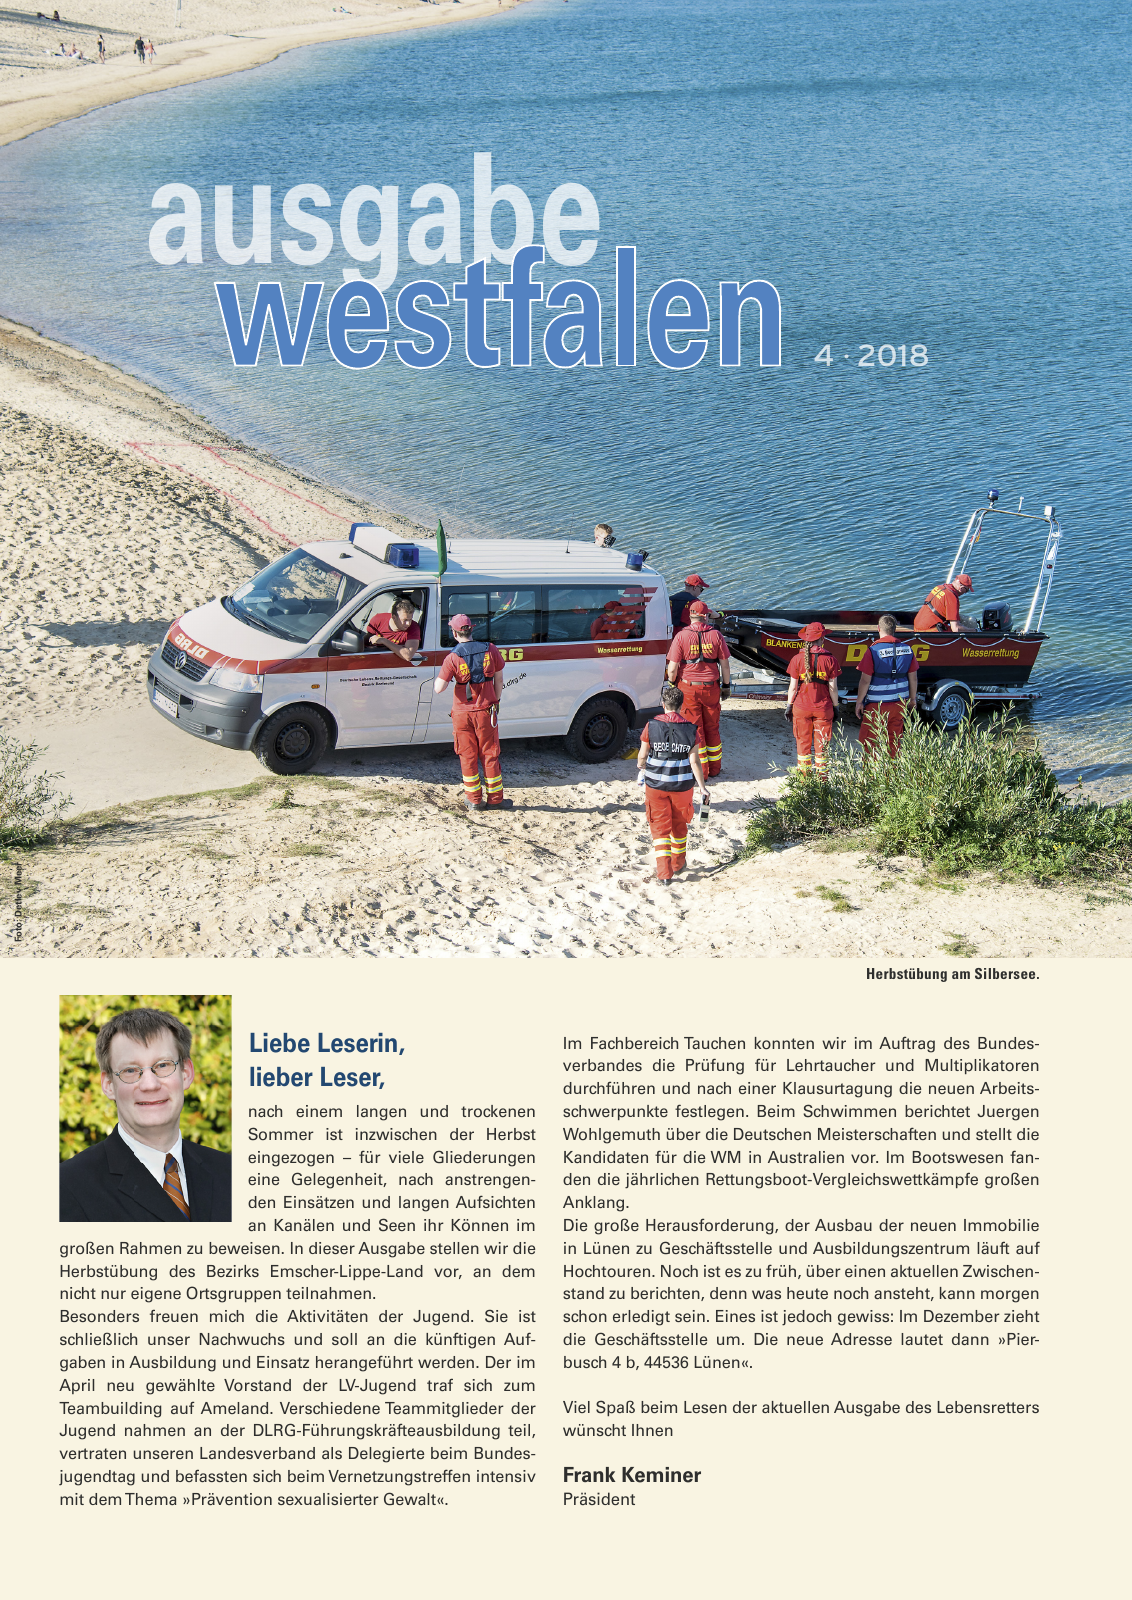 Vorschau Lebensretter 4/2018 - Regionalausgabe Westfalen Seite 3